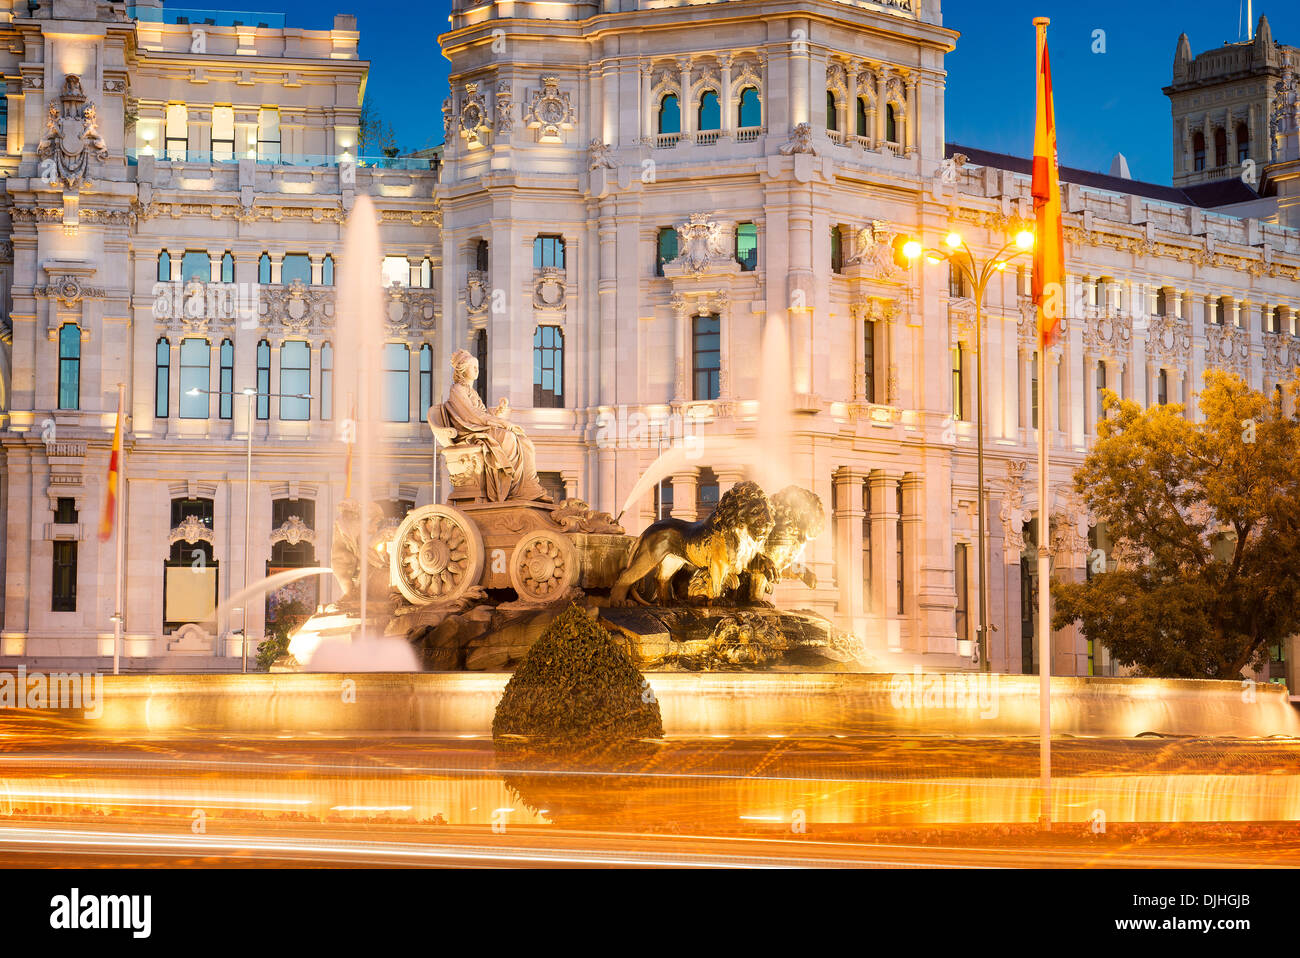 Plaza de la Cibeles (Cybele's Square) - Central Post Office (Palacio de Comunicaciones), Madrid, Spain. Stock Photo